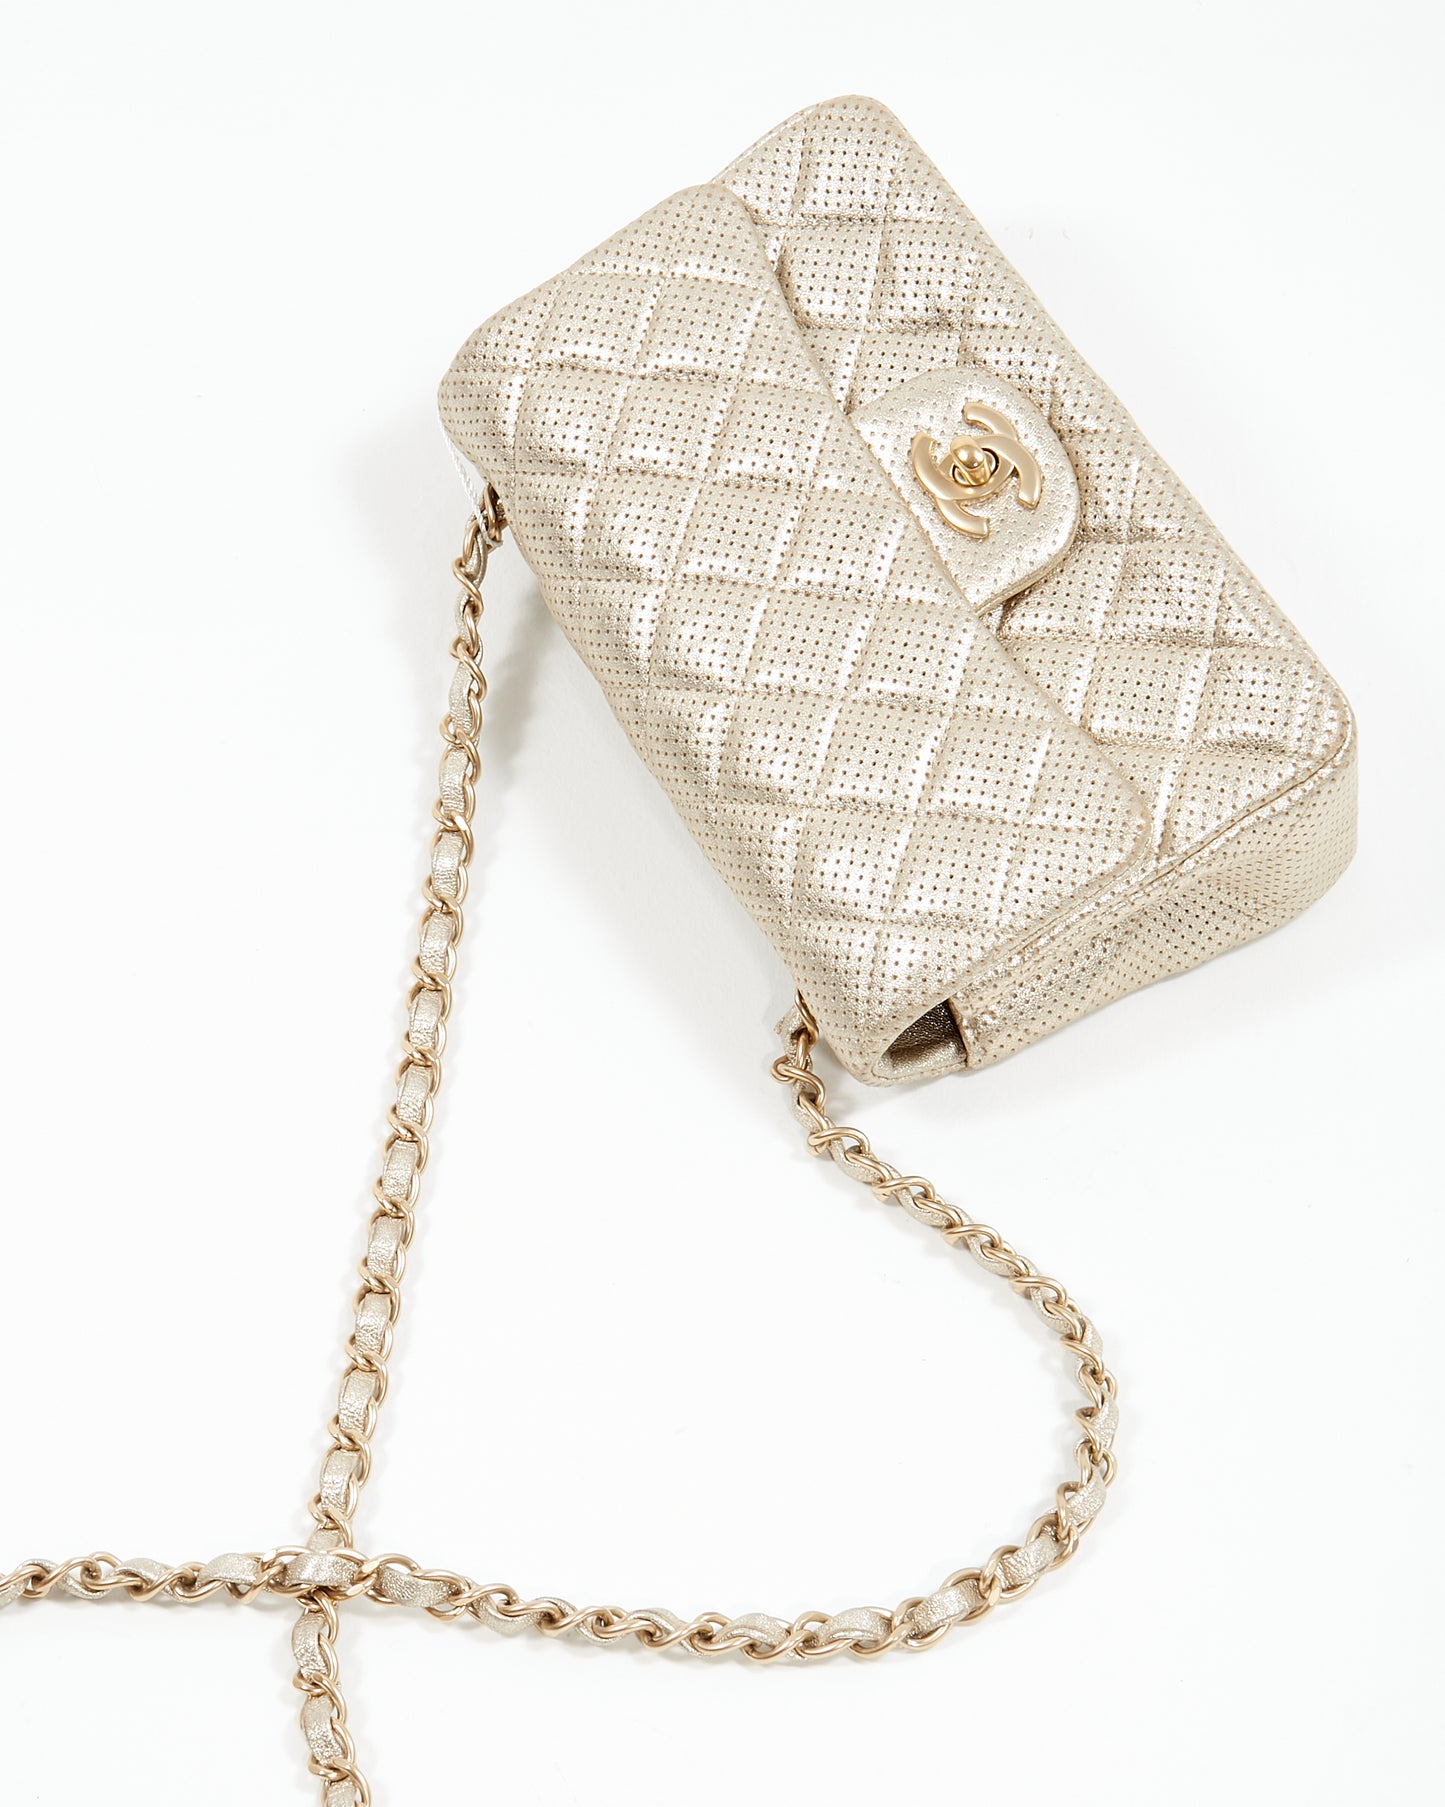 Mini sac à rabat classique rectangulaire en cuir d'agneau perforé métallisé doré Chanel